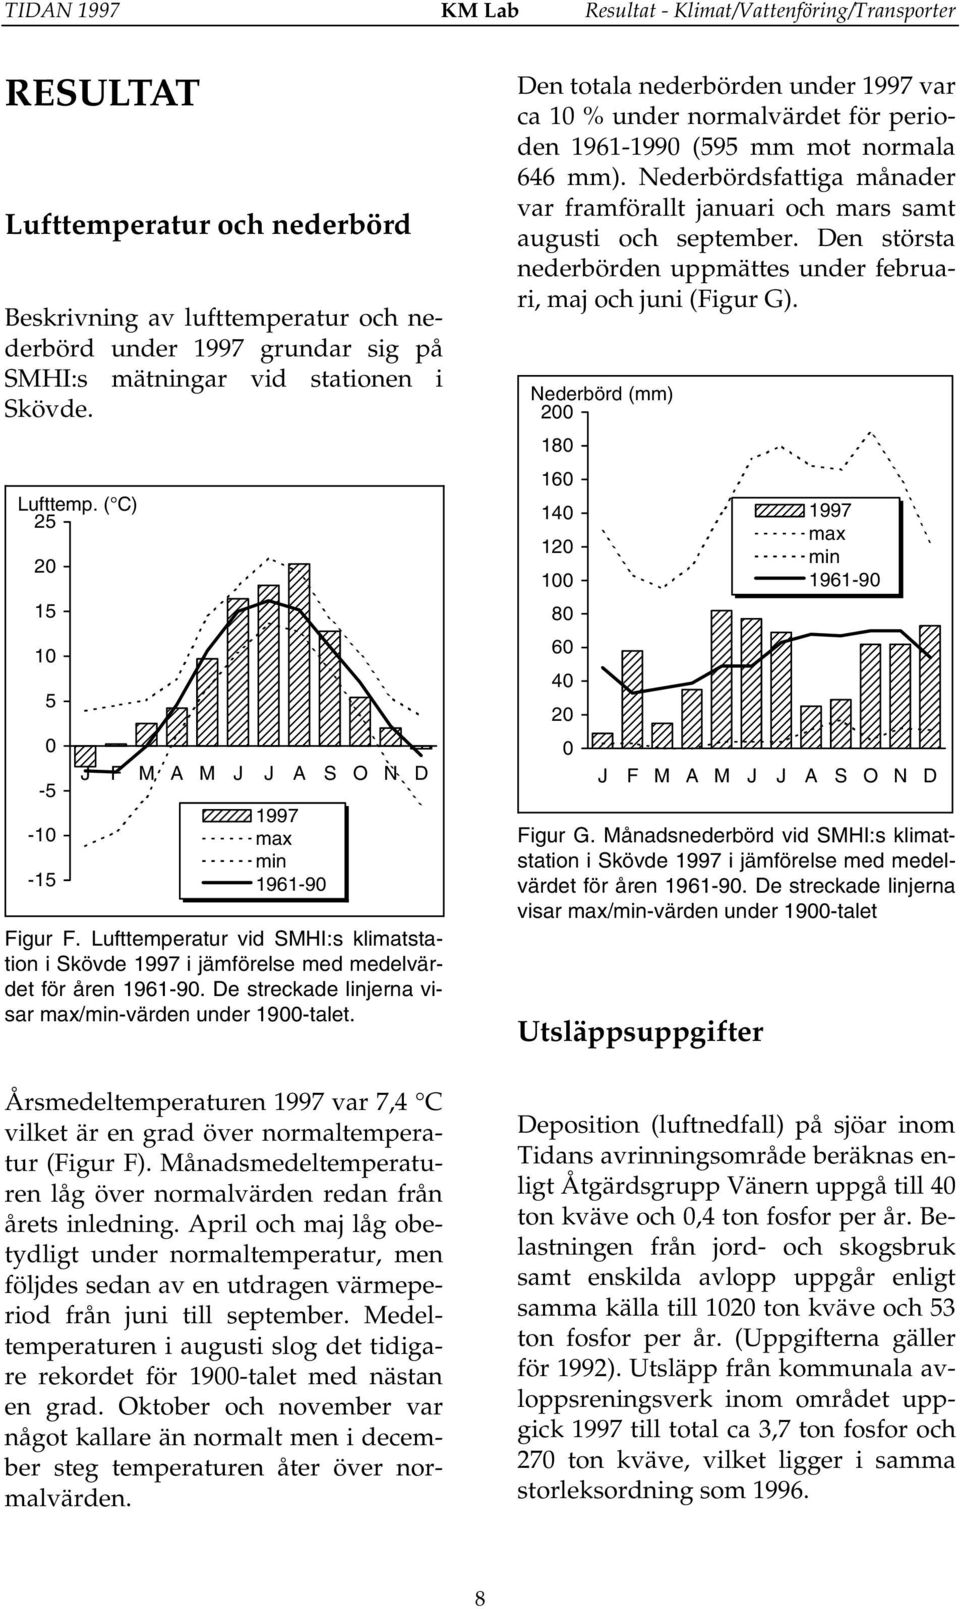 Lufttemperatur vid SMHI:s klimatstation i Skövde 1997 i jämförelse med medelvärdet för åren 1961-90. De streckade linjerna visar max/min-värden under 1900-talet.